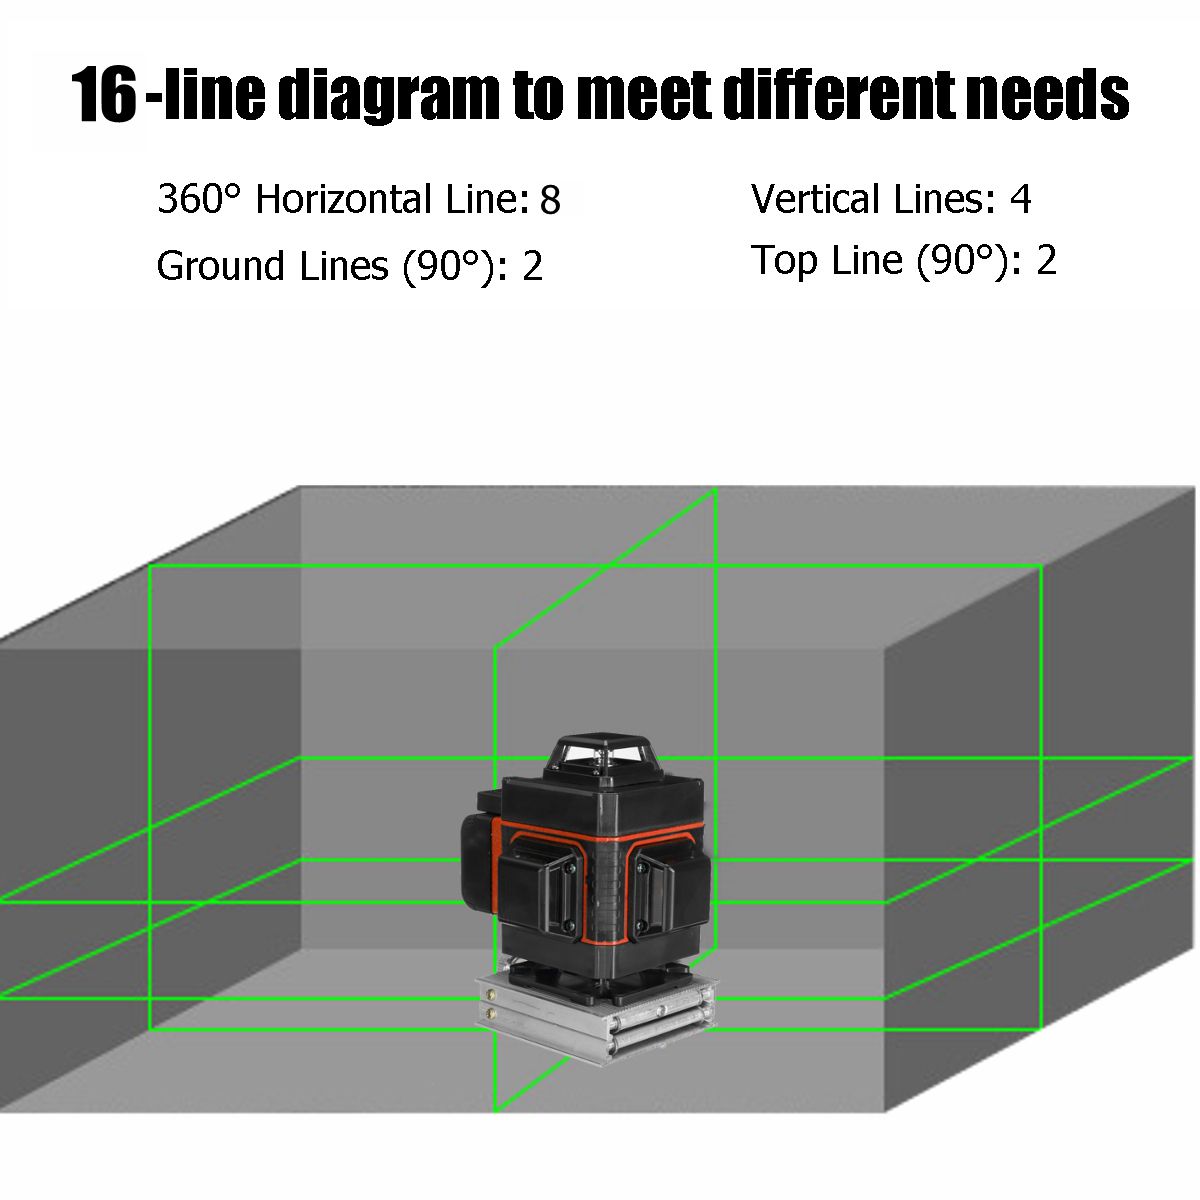 LED-Display-Green-Light-Laser-Level-3D-360deg-12-Line-Cross-Self-Leveling-Measure-Tool-1622590